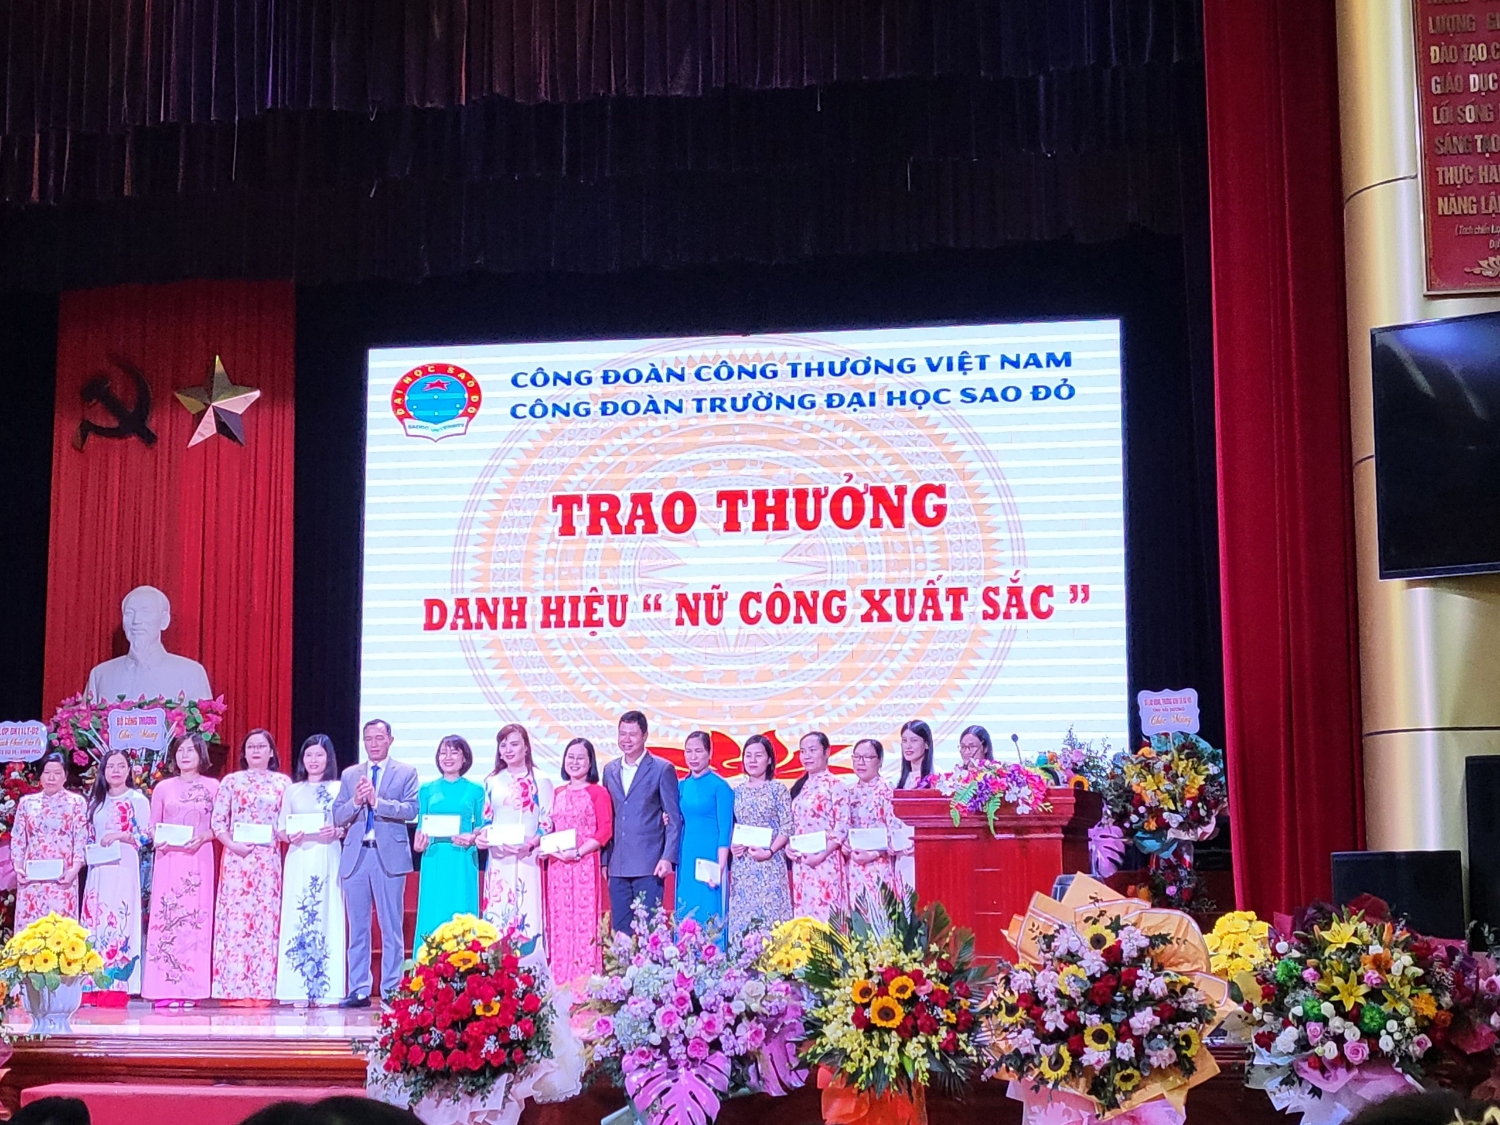 Trường Đại học Sao Đỏ kỷ niệm 92 năm ngày thành lập Hội liên hiệp Phụ nữ Việt Nam (20/10/1930 ÷ 20/10/2022)